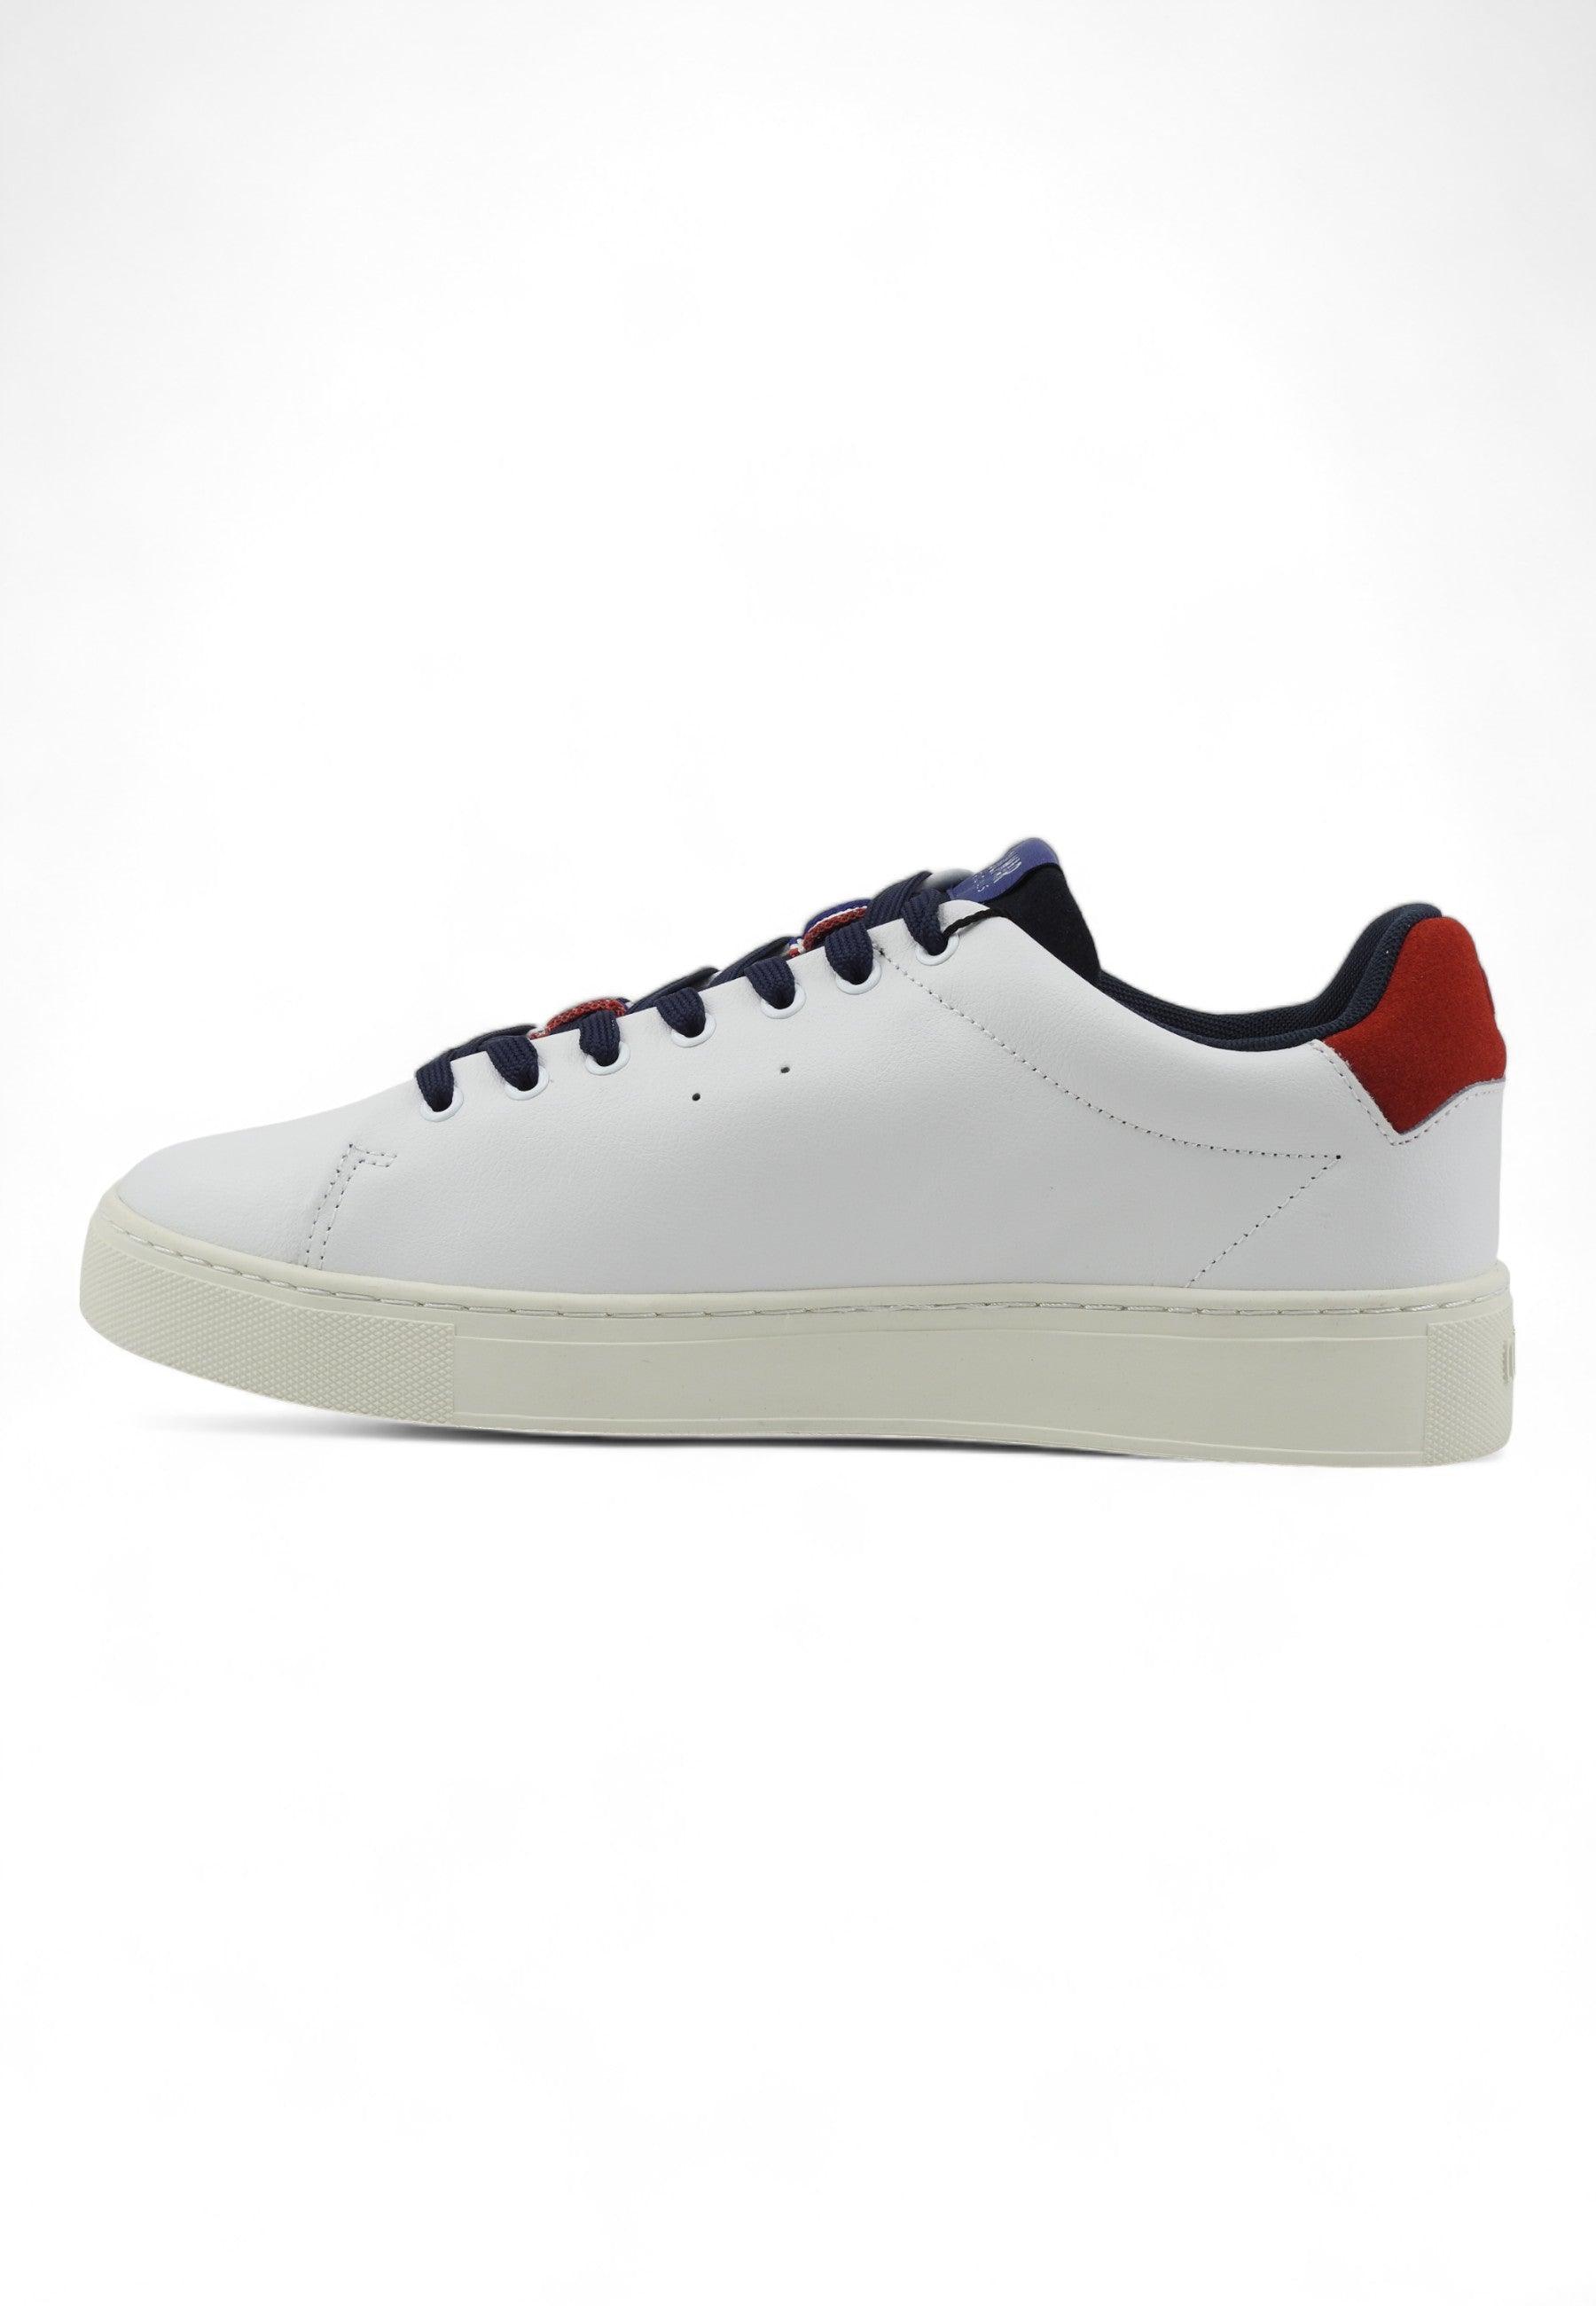 COLMAR Sneaker Uomo White Navy Red BATES GRADE - Sandrini Calzature e Abbigliamento